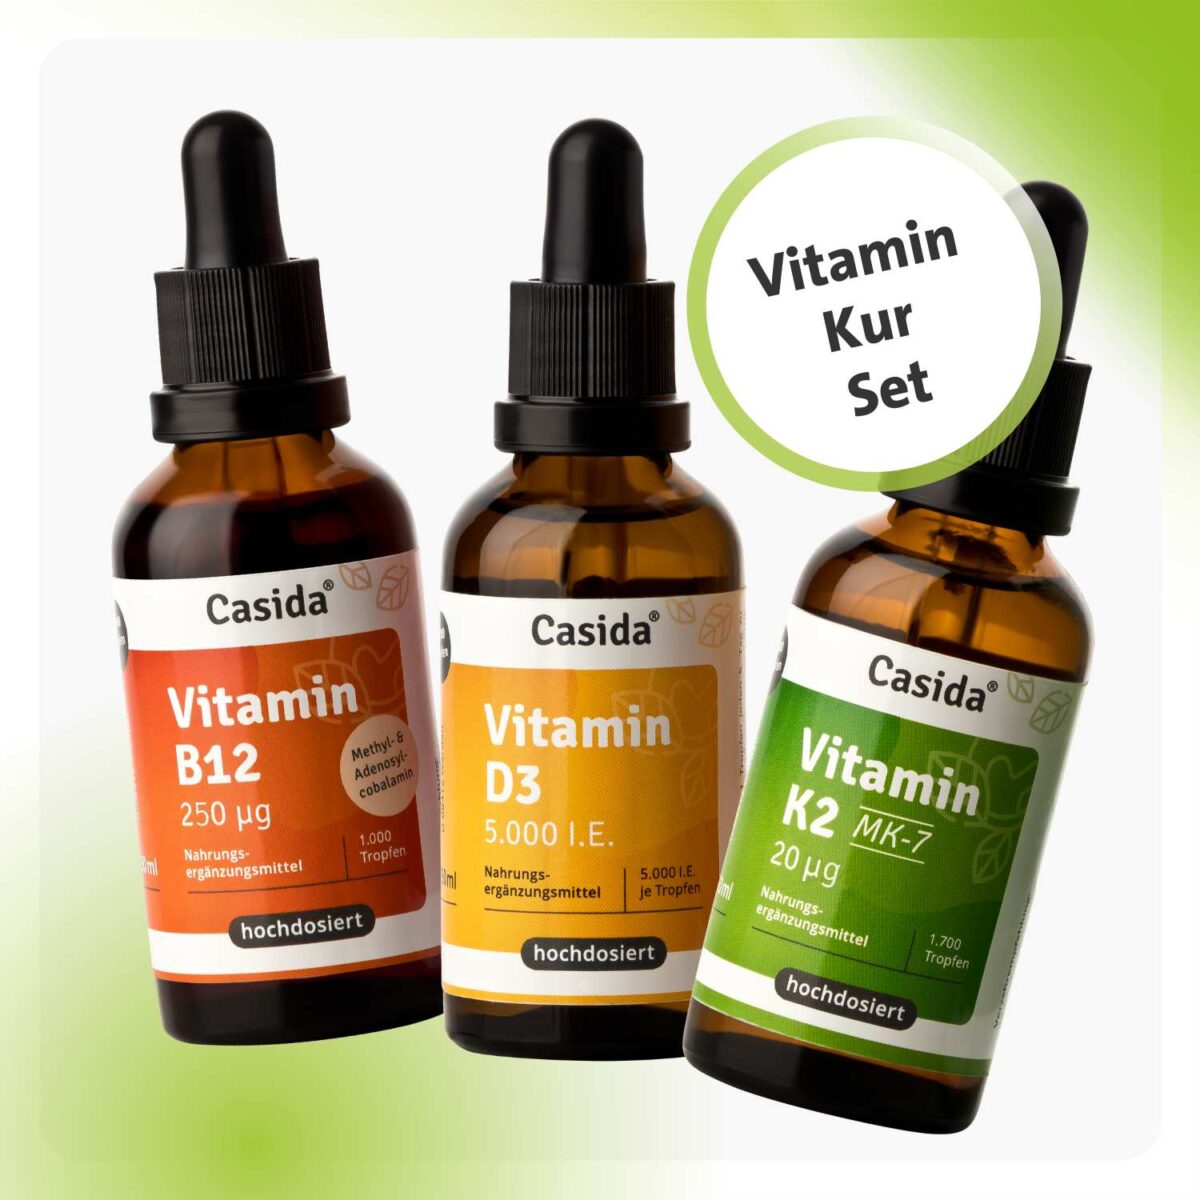 Casida Vitamin Kur mit B12, D3 5000 i.e. und K2 MK7